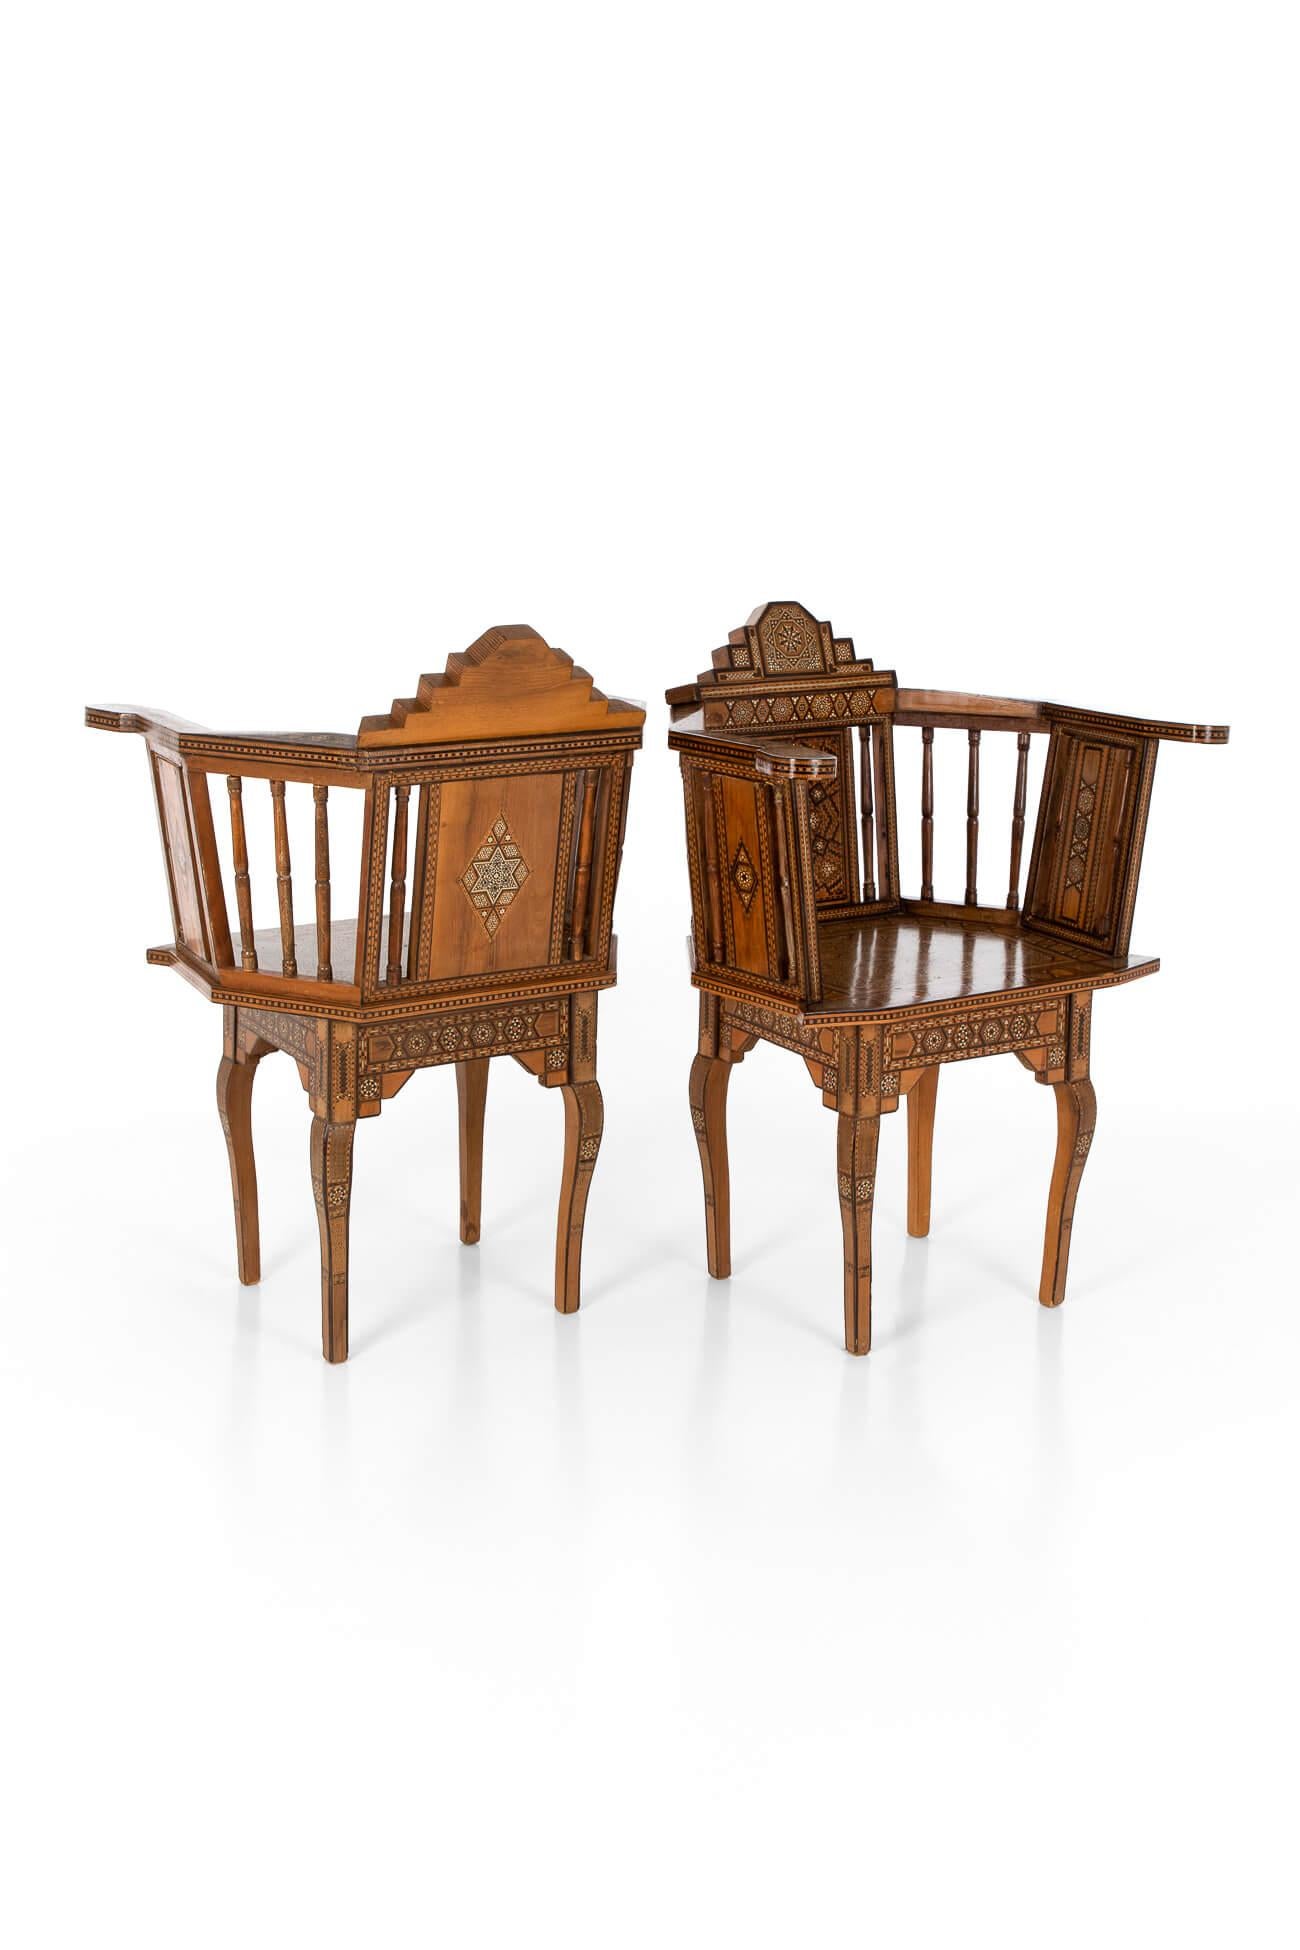 Une paire exceptionnelle de chaises arabes en damas fabriquées à partir de bois et d'os de spécimens locaux.

Chaque chaise présente une parqueterie complexe dans le goût islamique traditionnel, avec des motifs et des formes géométriques.

D'une